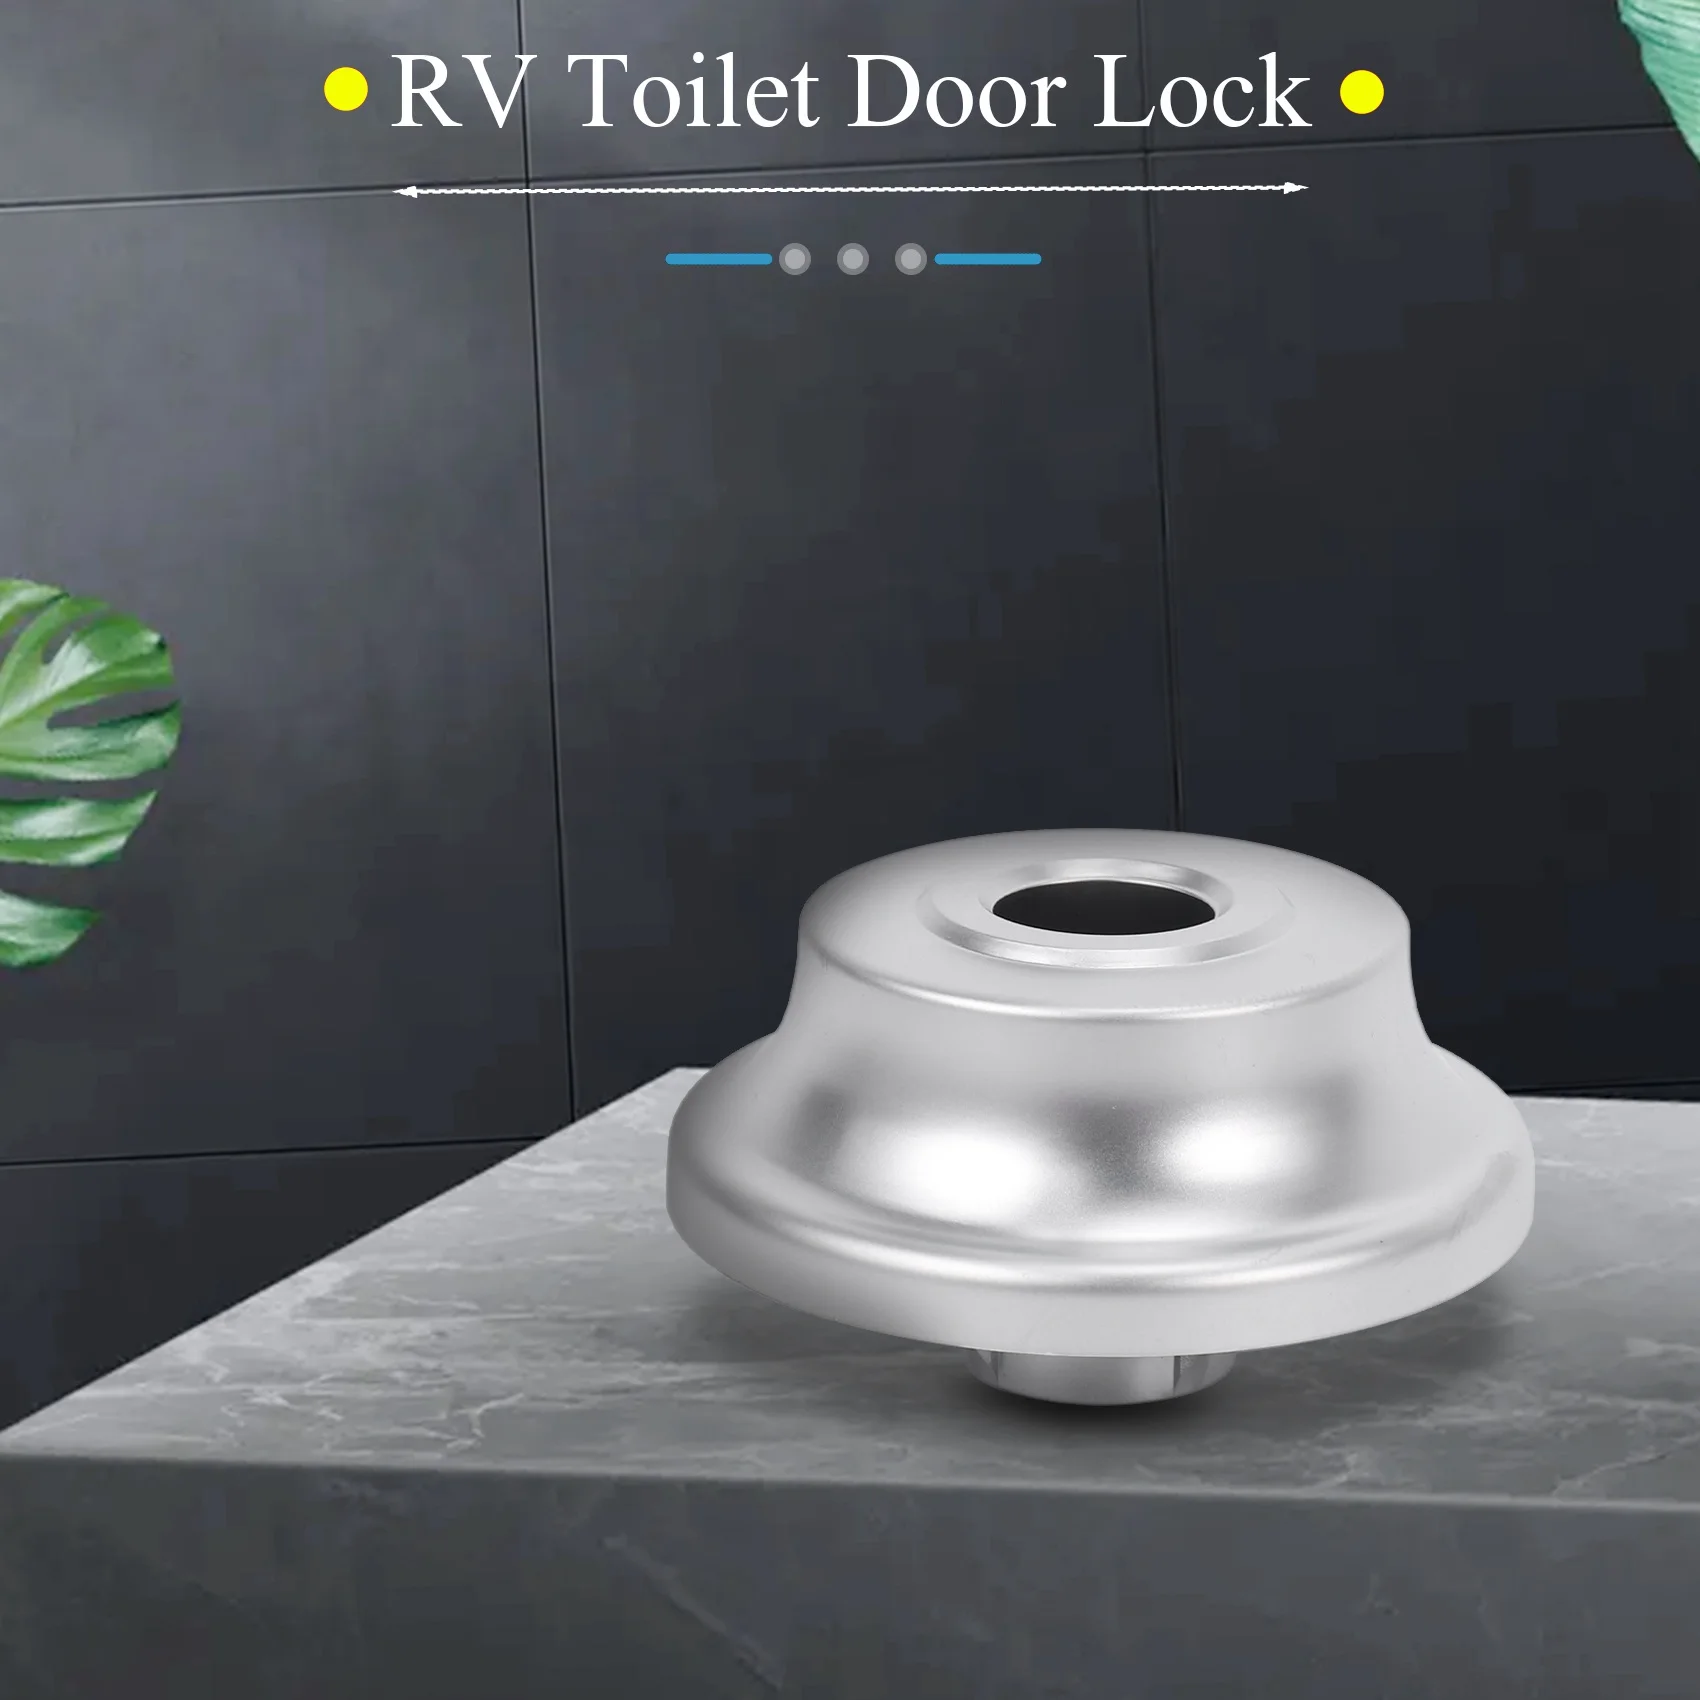 בקרוואן שירותים לנעול את הדלת בשירותים מנעול דלת הקרוואן הסירה לטפל בריח מנעול RV אביזרים - 0